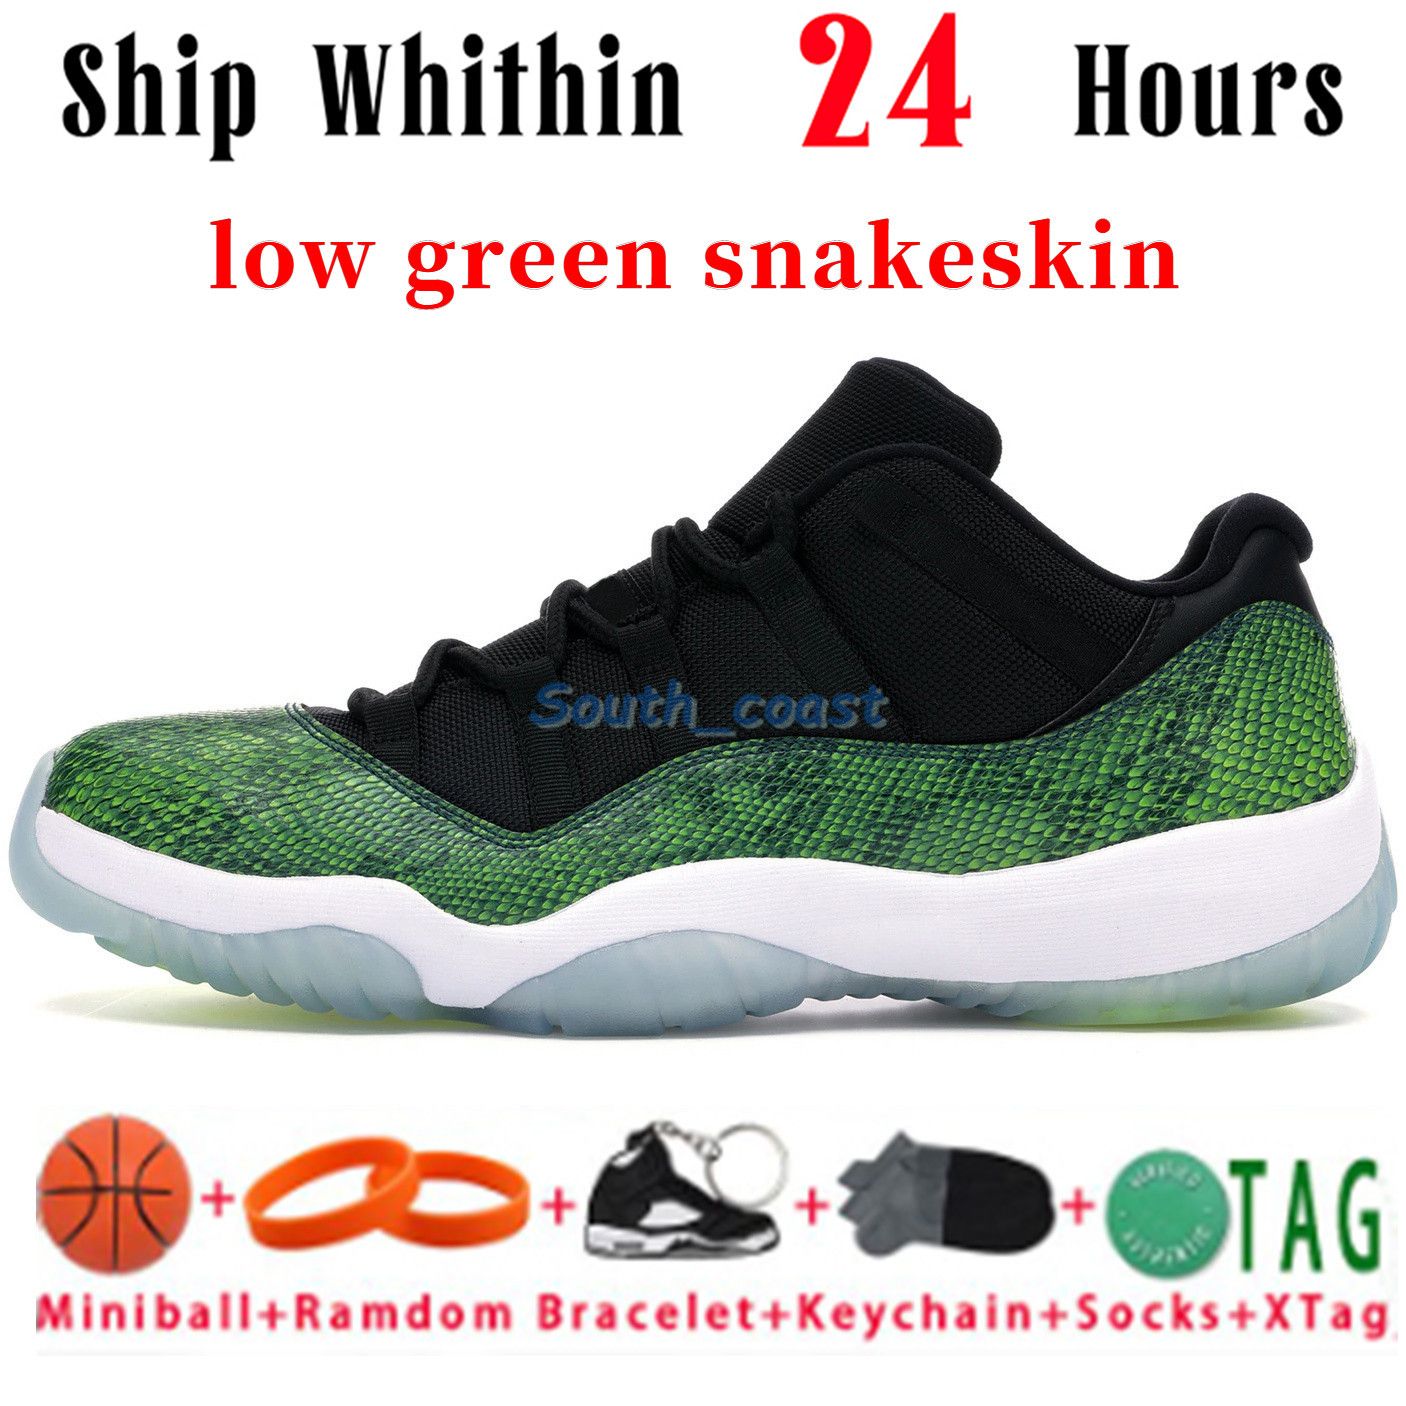 39 low green snakeskin